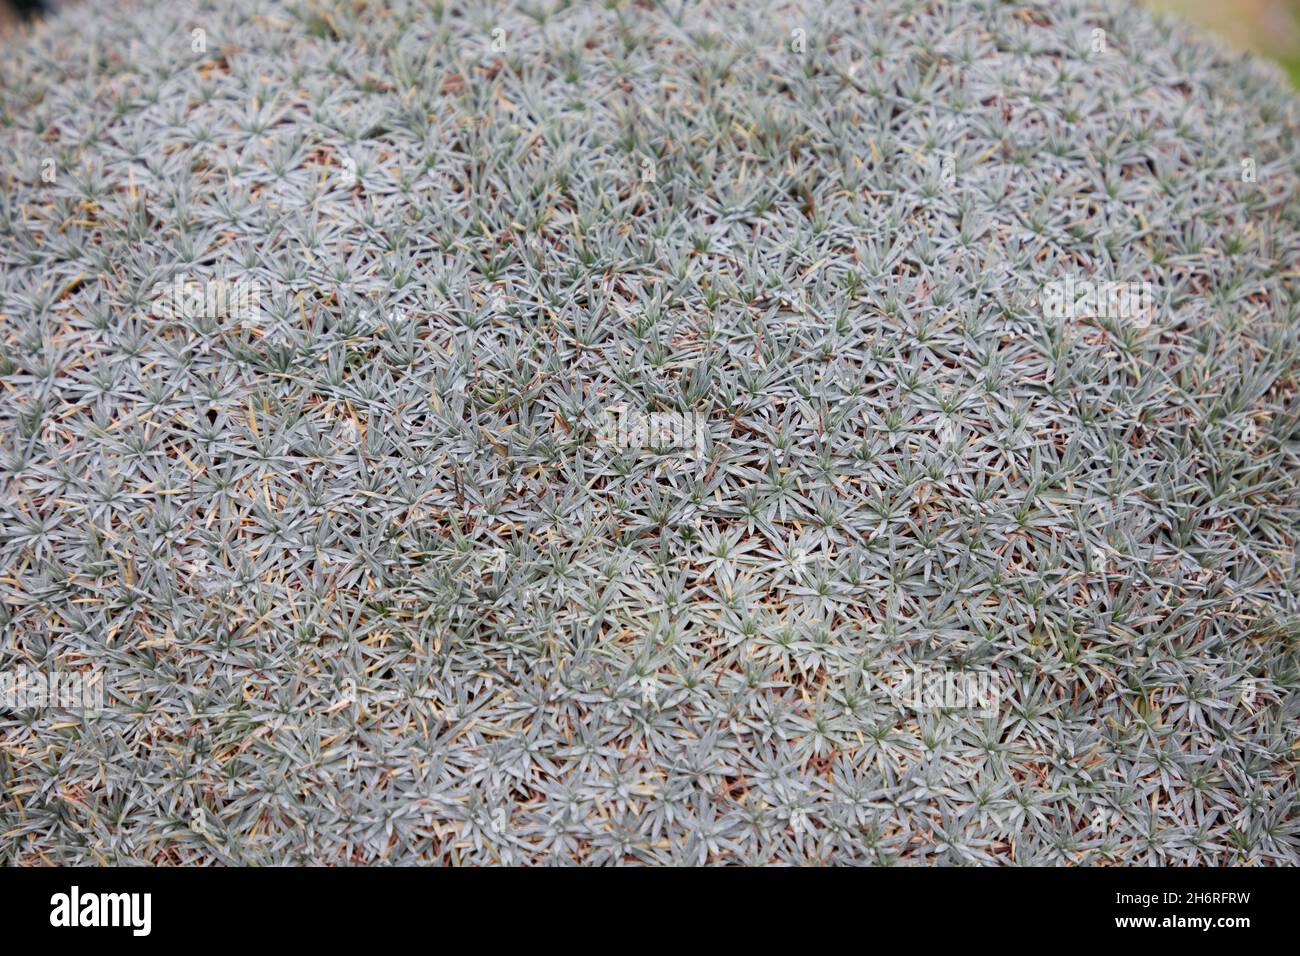 Close up of Acontholimon armenum. Stock Photo